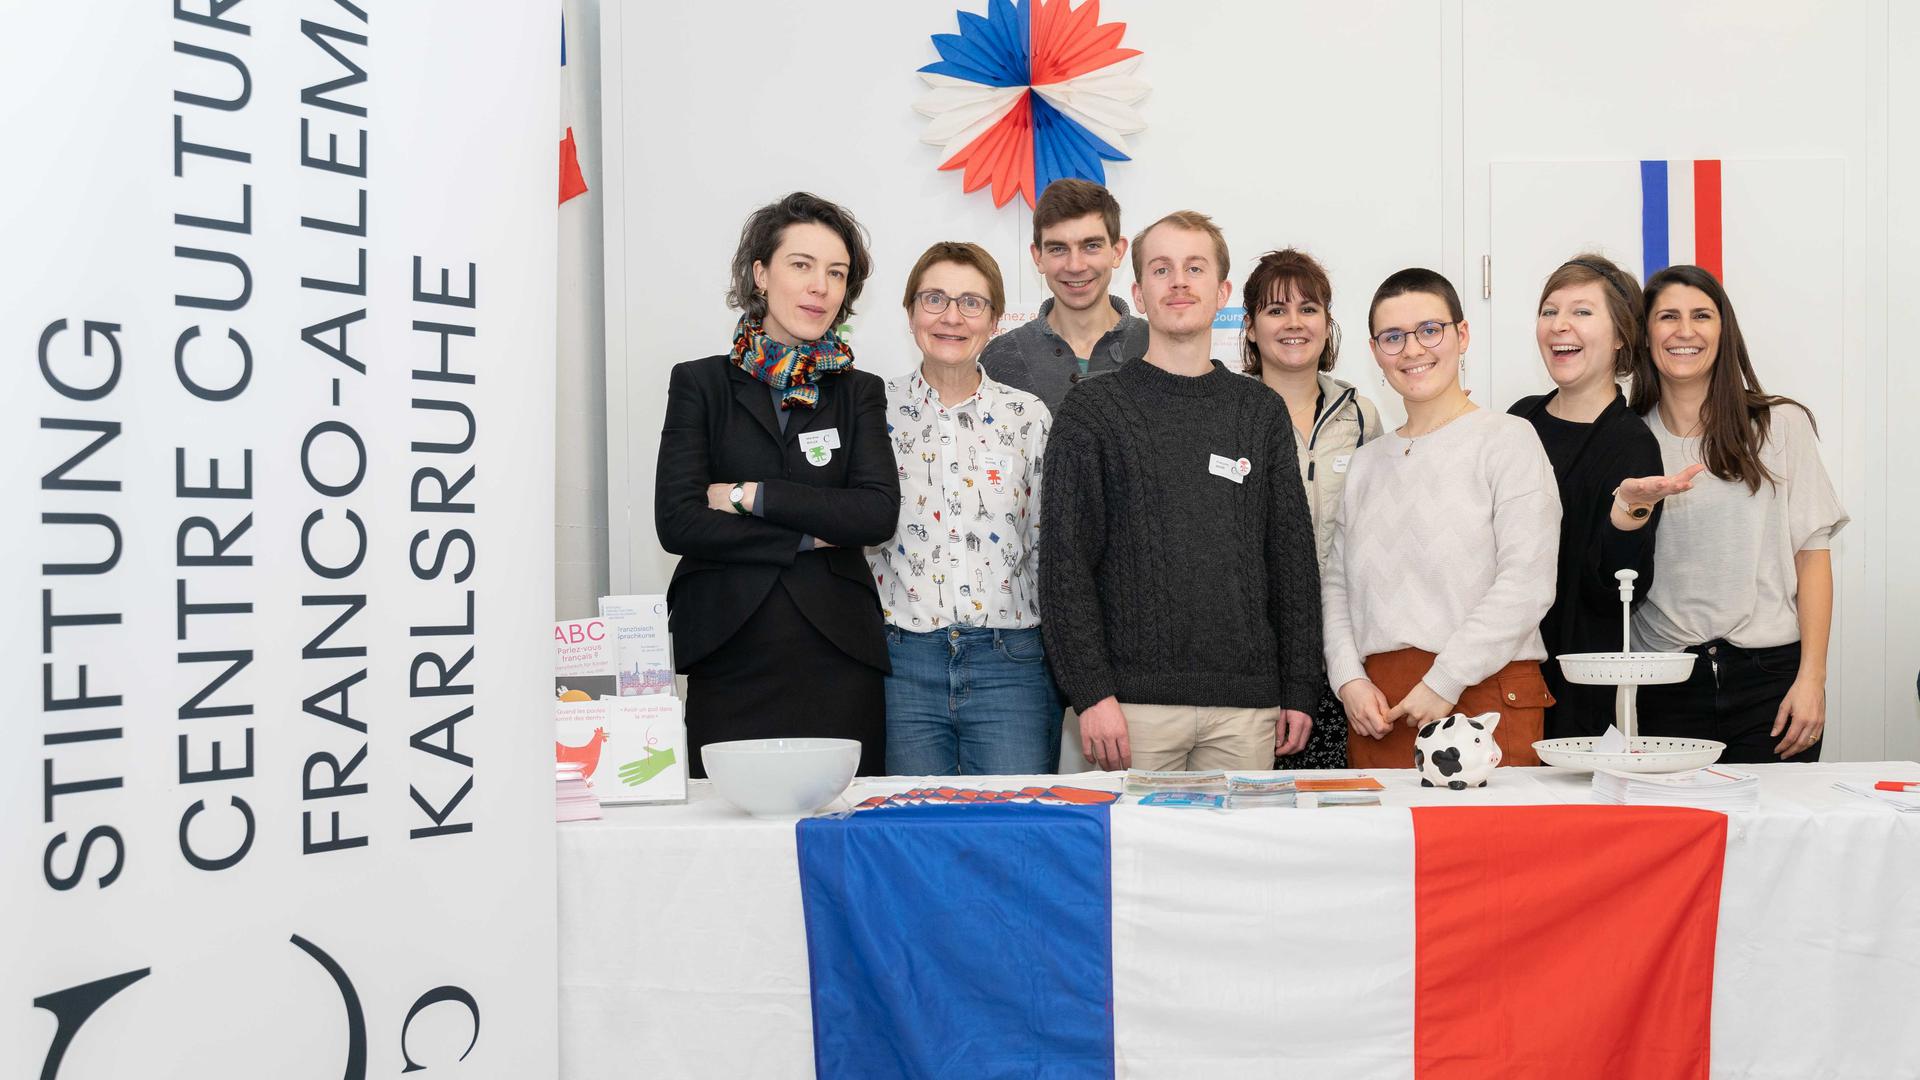 Das Team der Stiftung Centre Culturel Franco-Allemand Karlsruhe mit Leiterin Marlène Rigler (rechts), Mitarbeiterinnen, Praktikanten und Volontären am deutsch-französischen Tag im Regierungspräsidium Karlsruhe im Februar 2020.